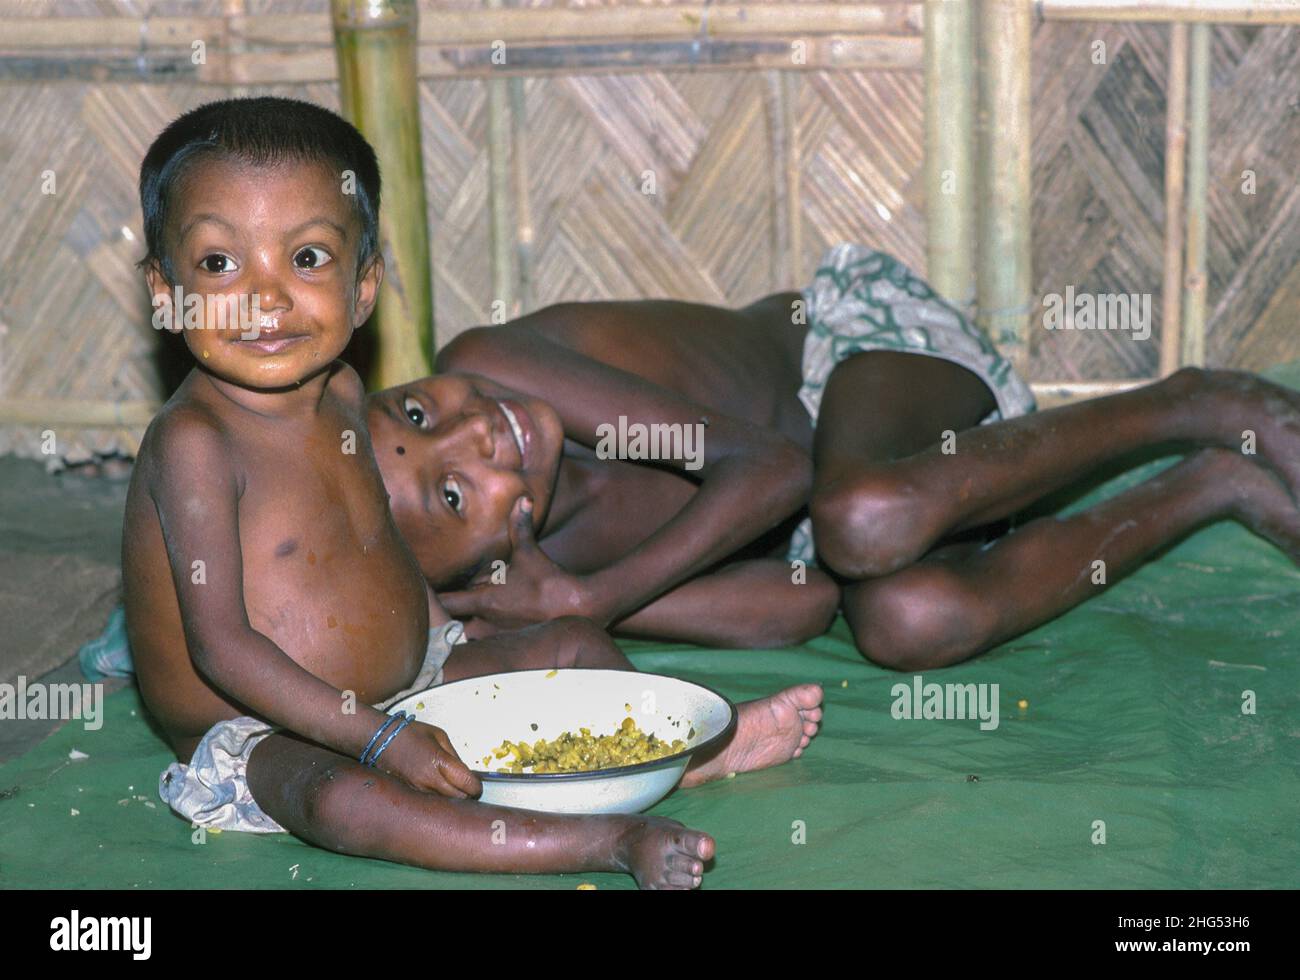 Zwei glücklich aussehende Jungen mit einer Schüssel Nahrung in einer Notfütterungsstelle, die während schwerer Überschwemmungen für die Vertriebenen eingerichtet wurde. Jamalpur District, Bangladesch Stockfoto